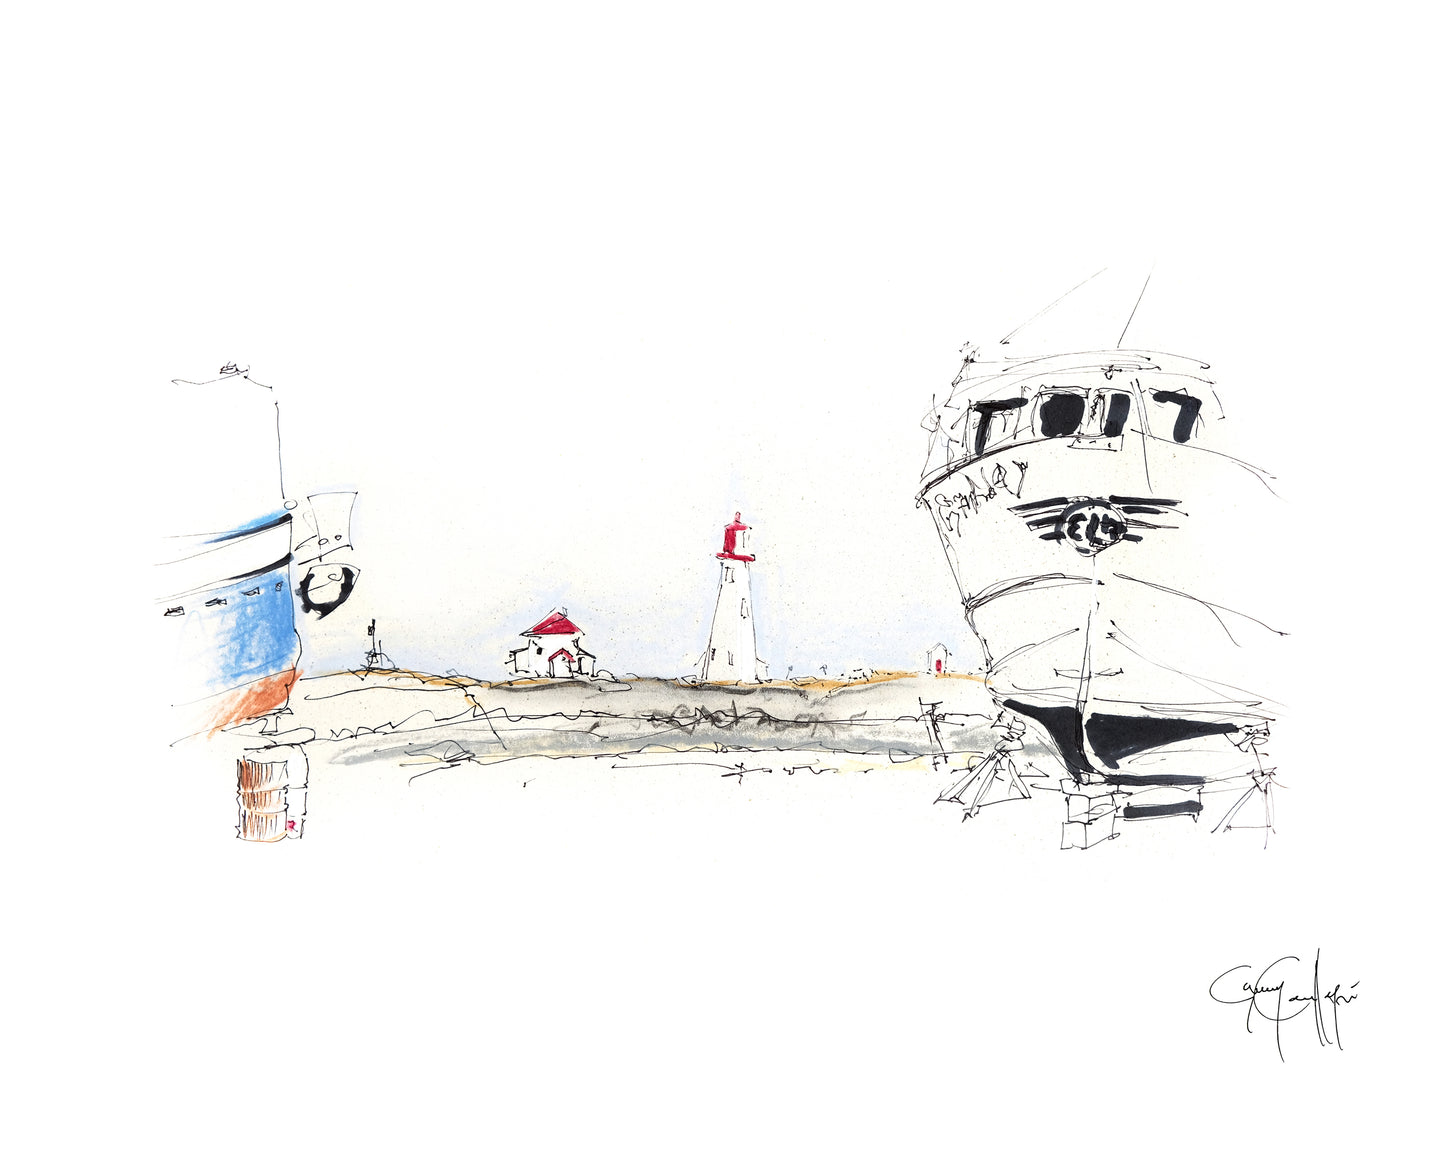 Dessin du port de pêche de Millerand avec bateau et phare aux Iles de la Madeleine de Guy Cauffopé